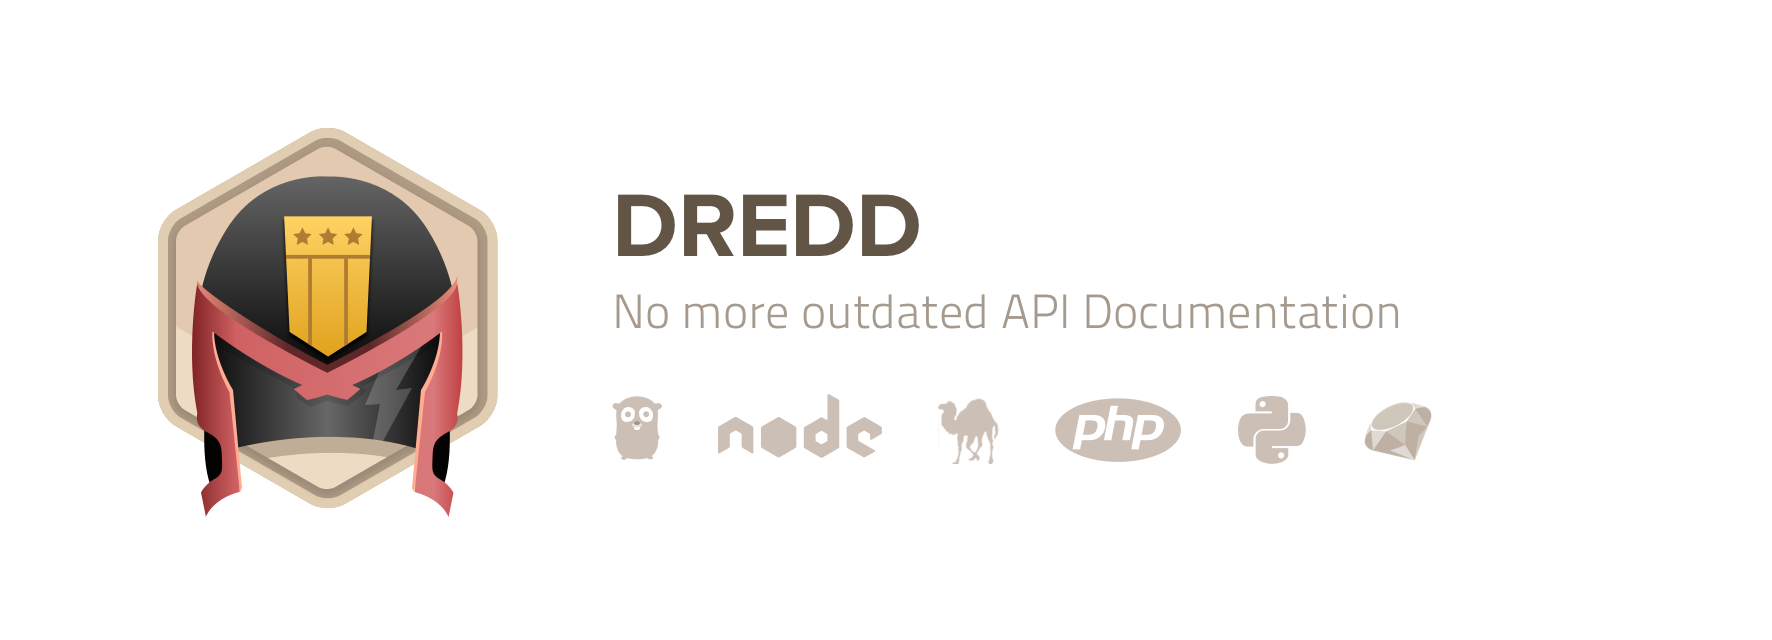 Dredd - HTTP API Testing Framework